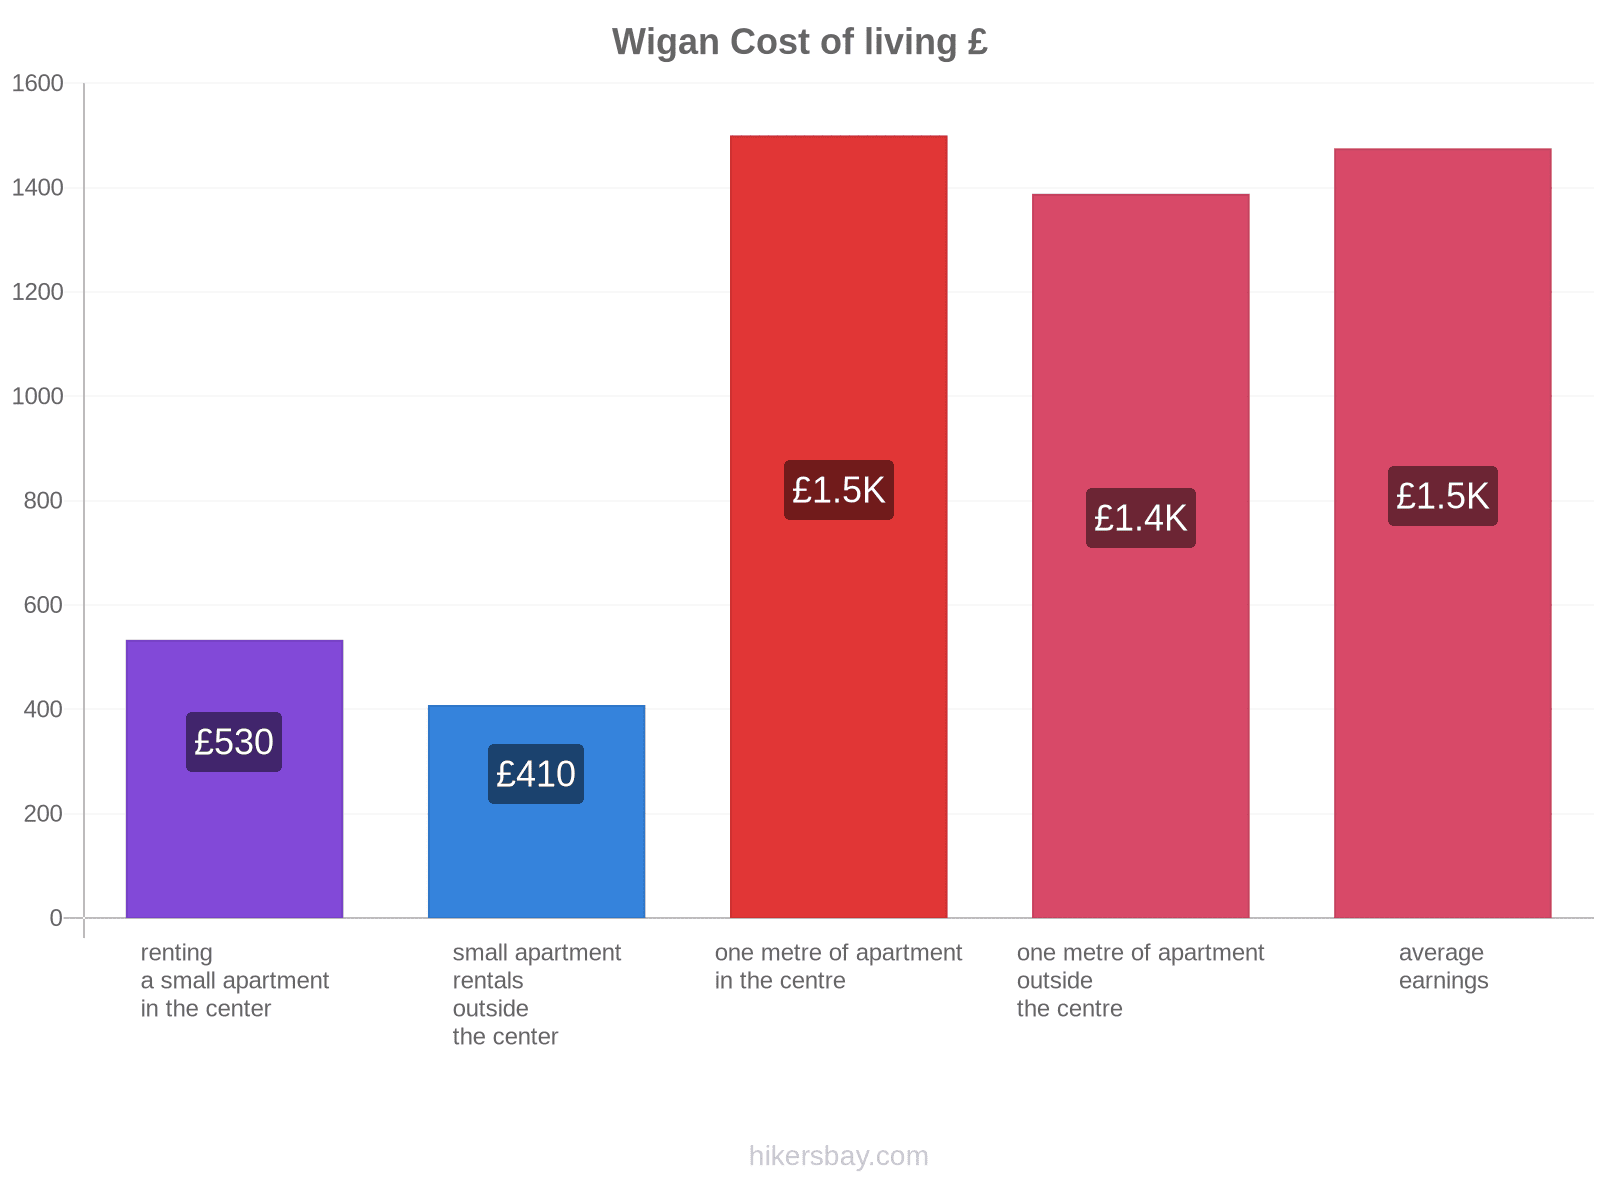 Wigan cost of living hikersbay.com